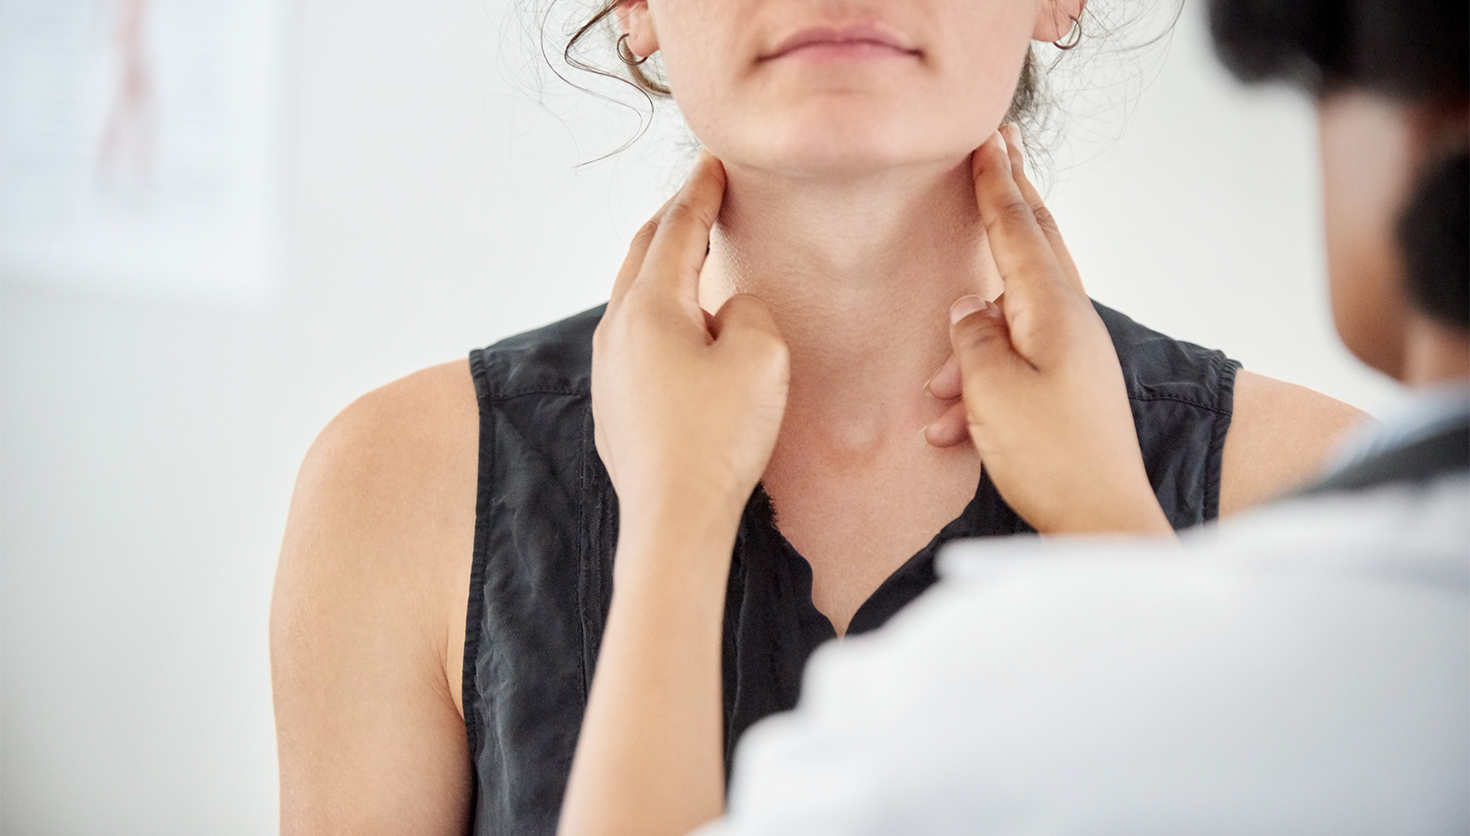 thyroid awareness